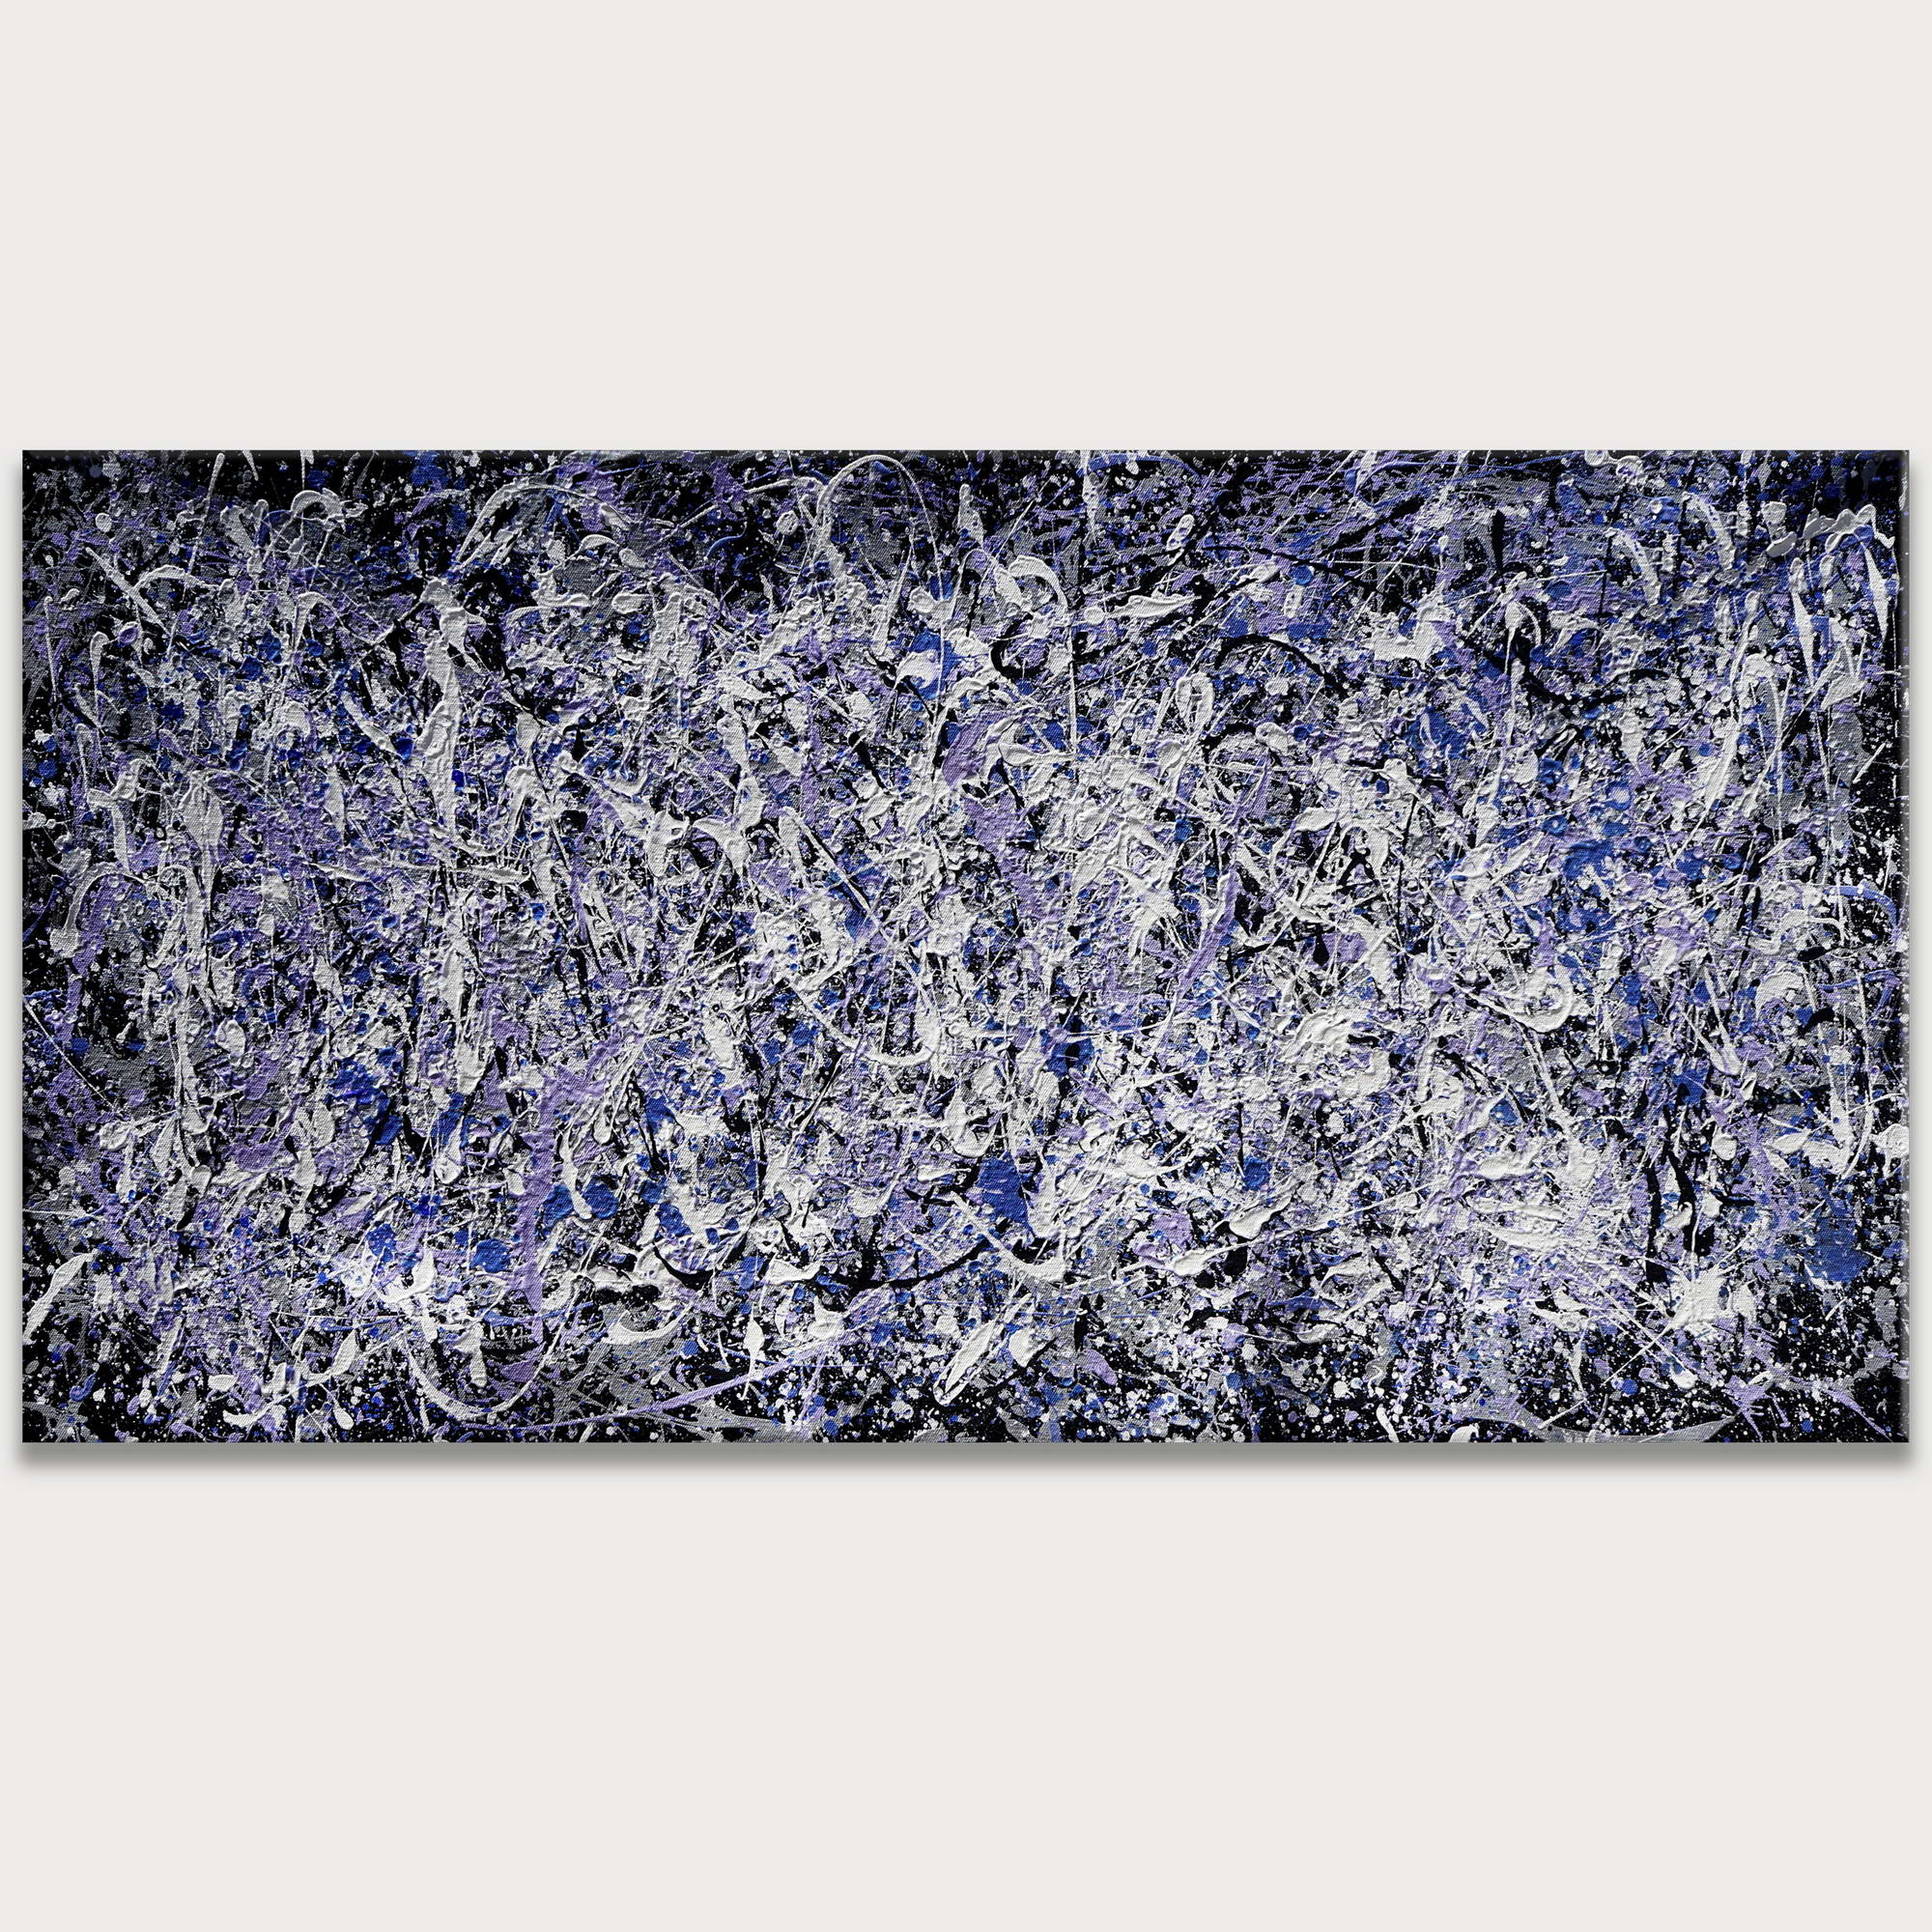 Dipinto a mano Astratto Blu e Bianco stile Pollock 75x150cm